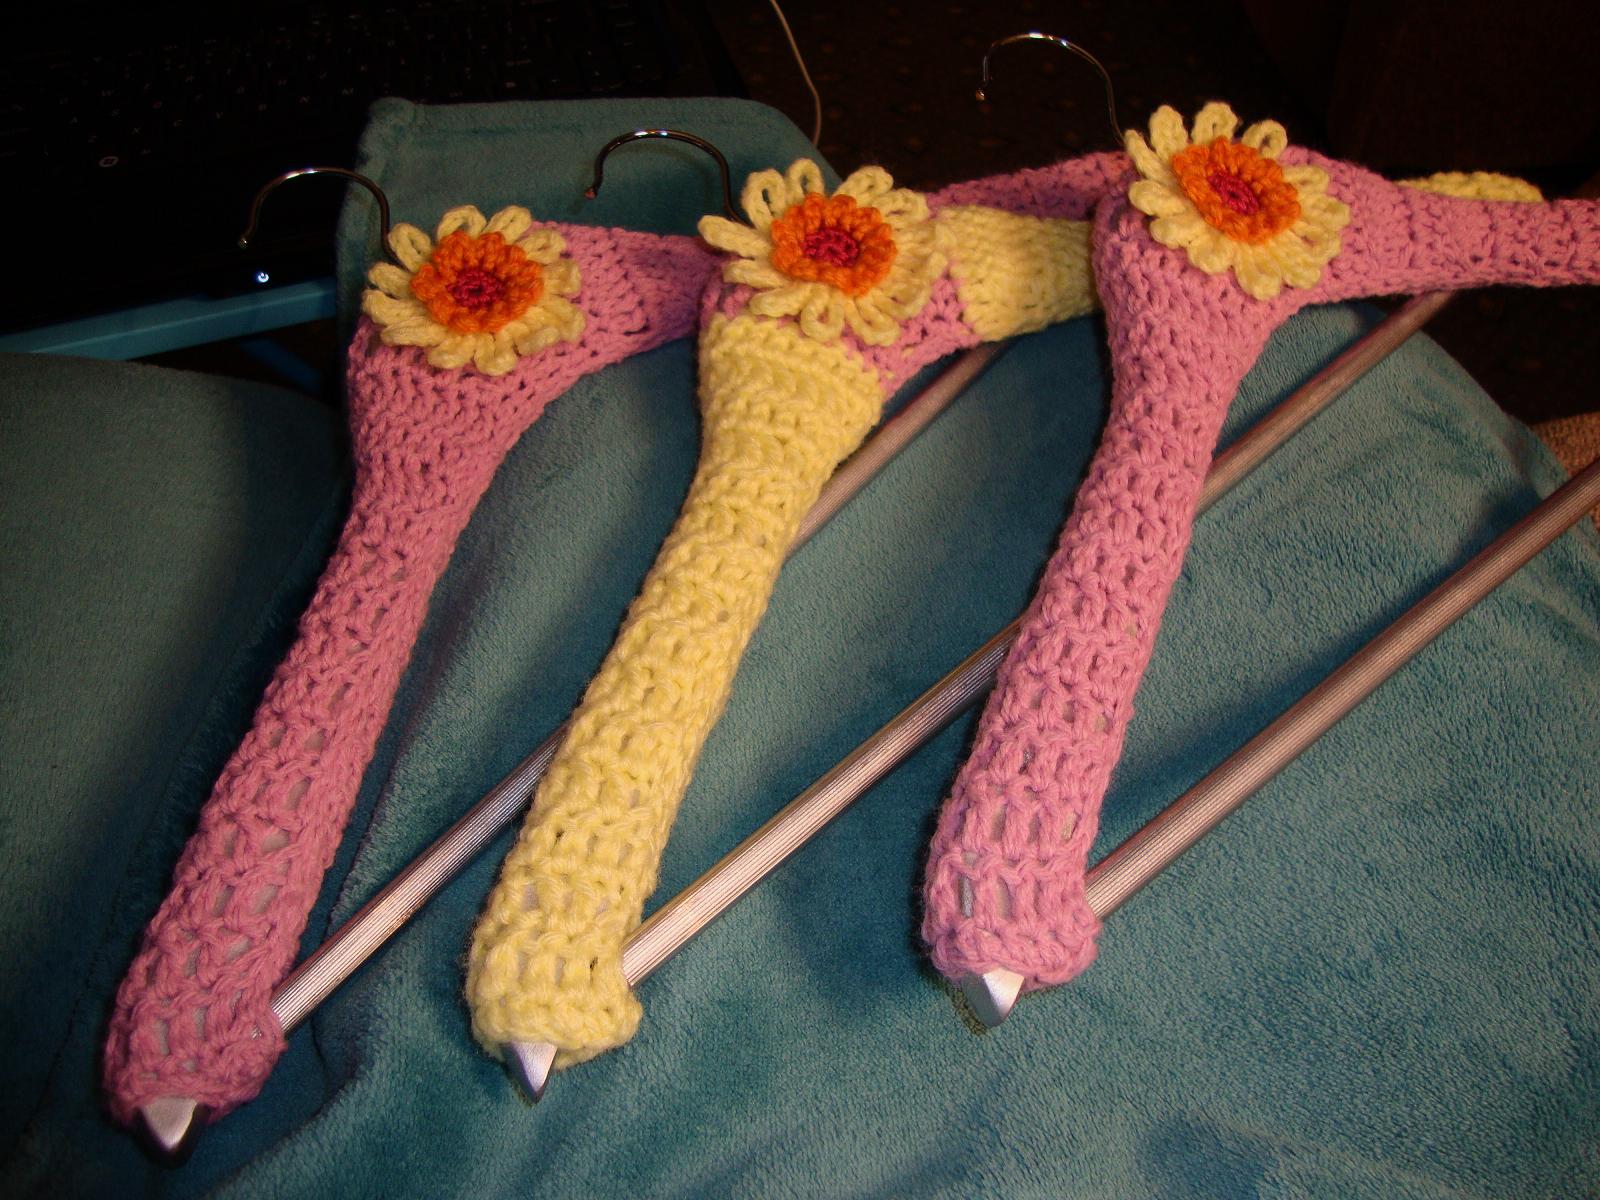 Crochet Hanger Cover Pattern | Free Patterns For Crochet